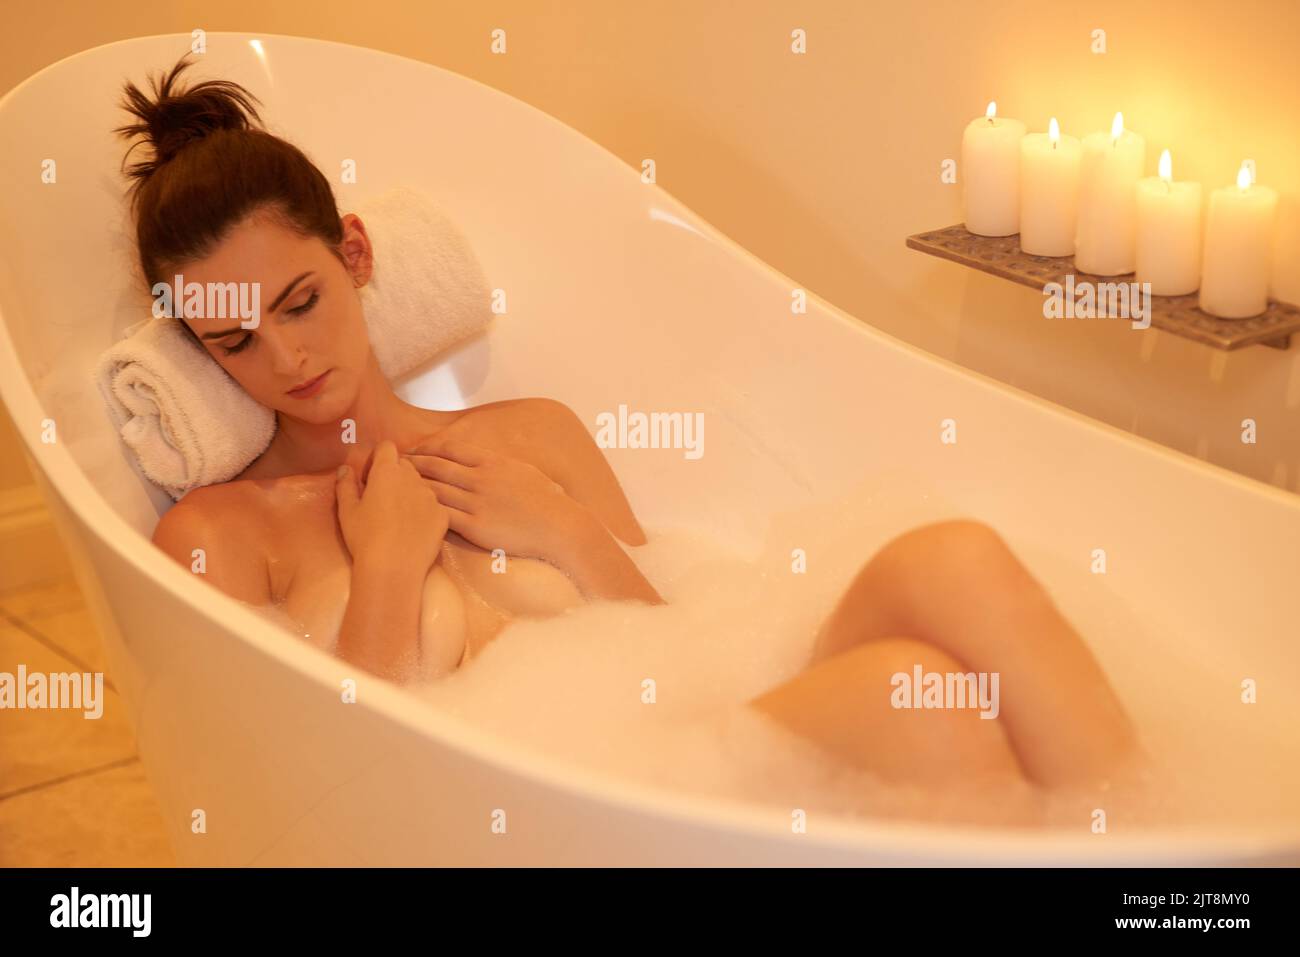 Nichts stört sie in der Badewanne. Aufnahme einer attraktiven jungen Frau, die ein Schaumbad nimmt. Stockfoto